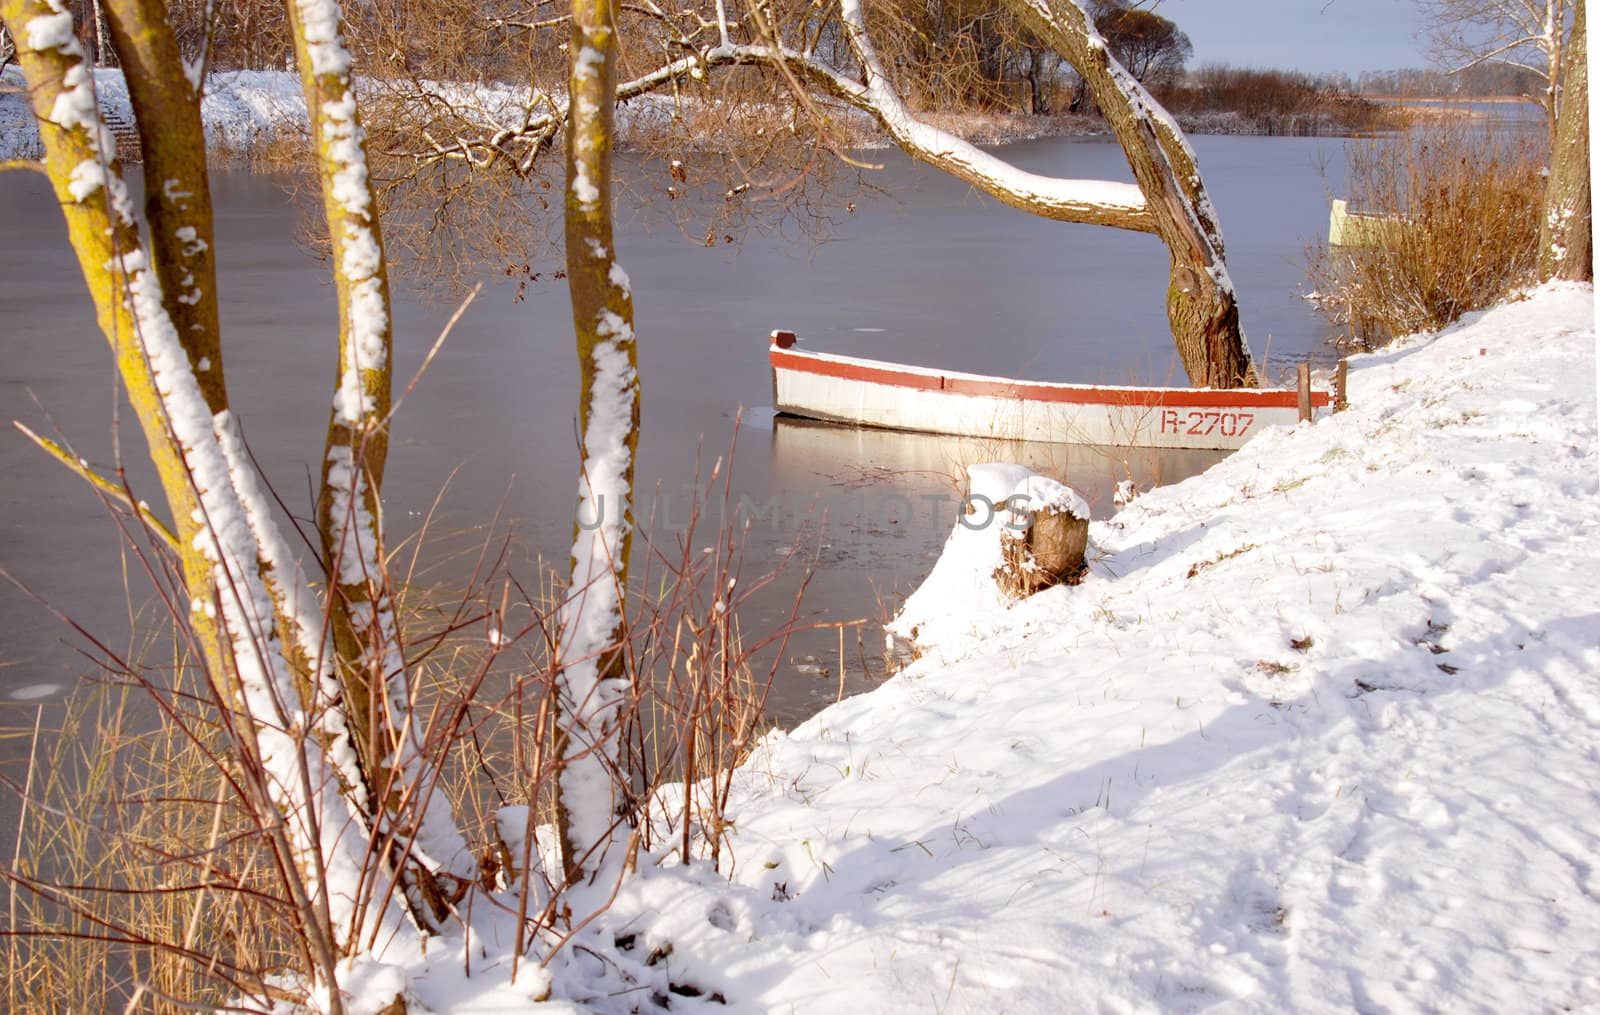 Frozen boat near old tree in early winter ice